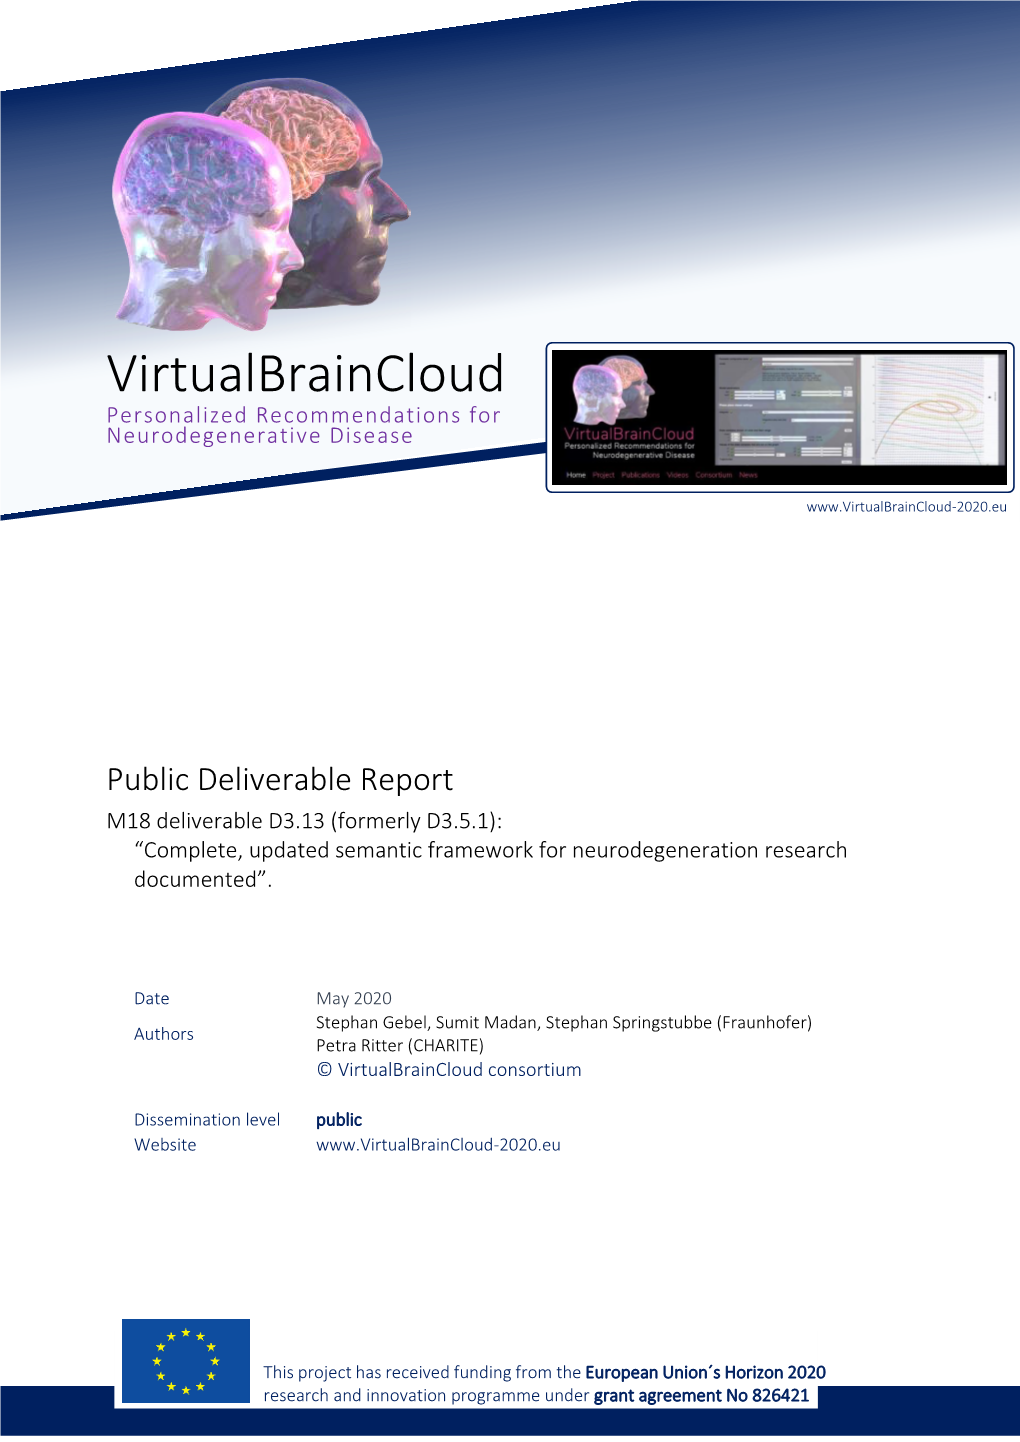 Semantic Framework for Neurodegeneration Research Documented”